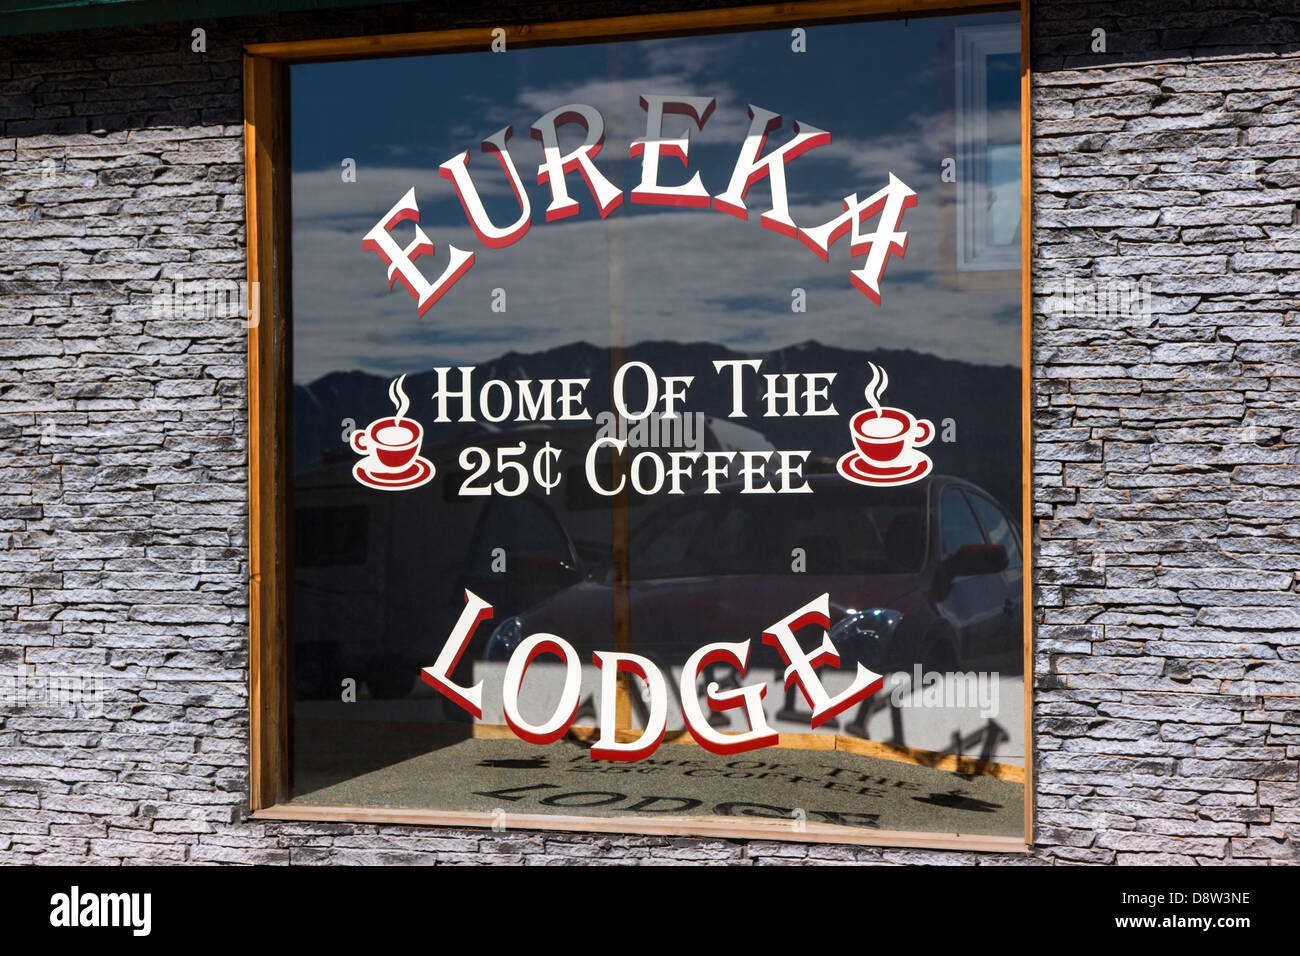 Propriété de la famille Eureka roadhouse, Lodge et restaurant. Accueil des 25 100 Café. Banque D'Images